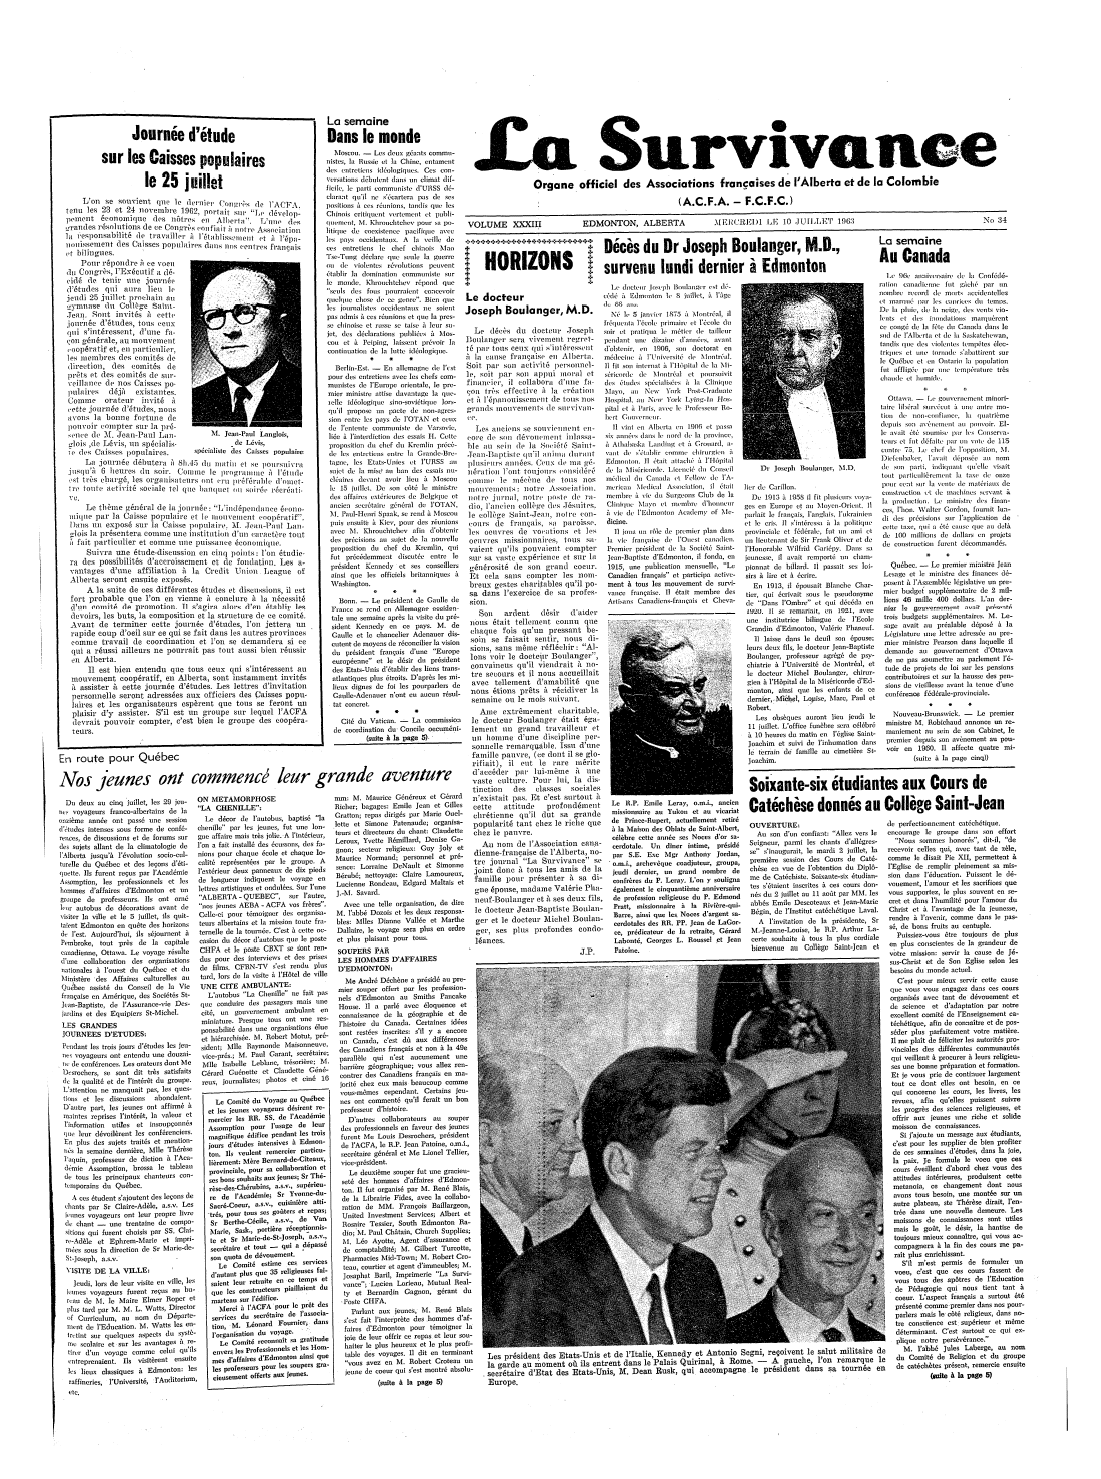 La survivance July 10, 1963 Page 1